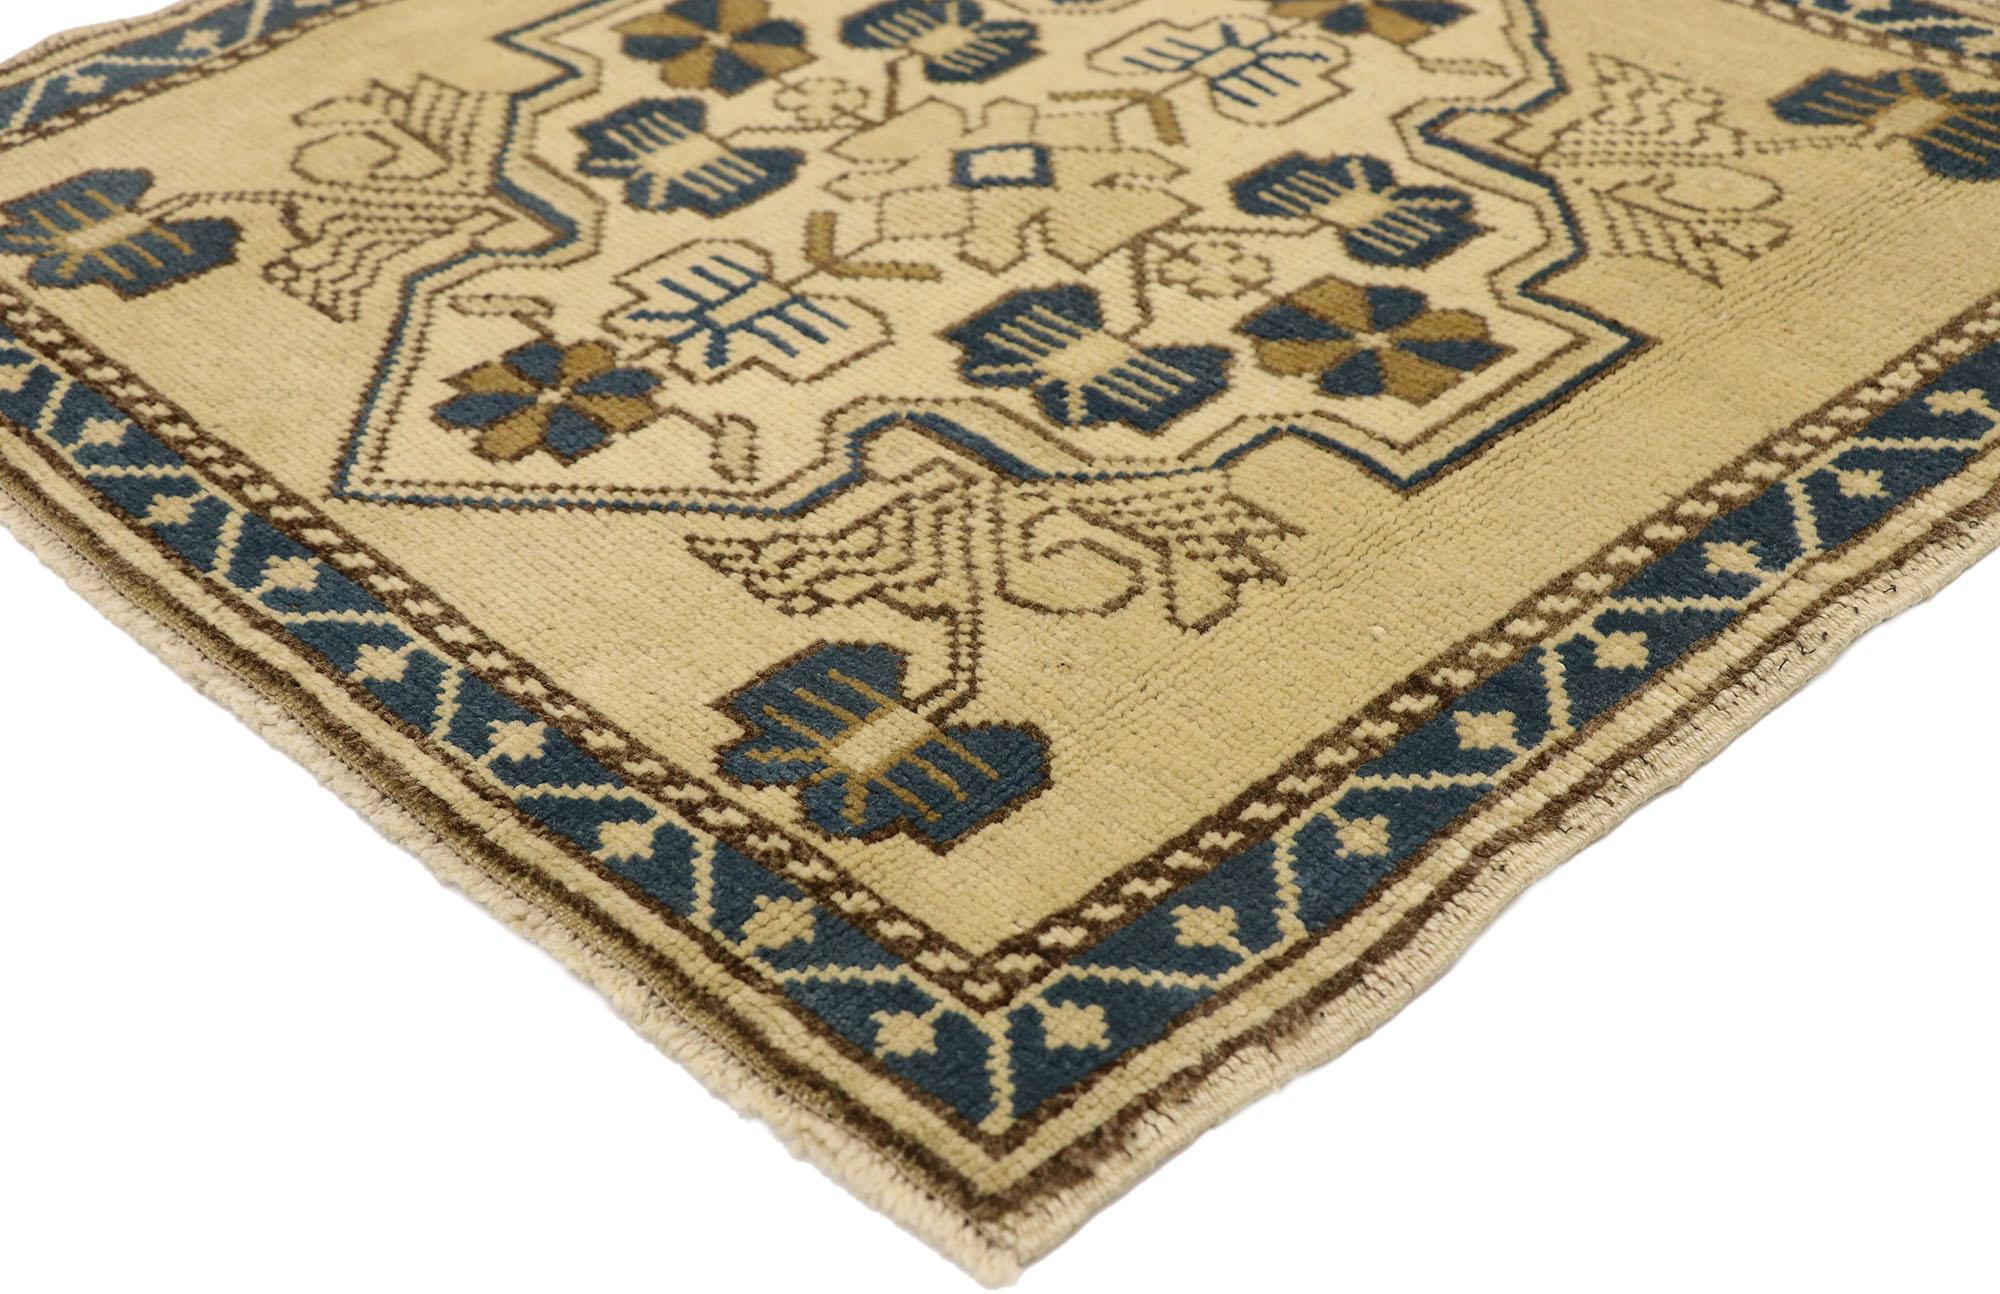 51258 Tapis turc vintage Yastik, 02'02 x 02'02. Dans ce tapis Yastik turc vintage en laine nouée à la main, la beauté sans effort et l'élégance discrète fusionnent pour créer une pièce captivante avec une subtile touche méditerranéenne. Le champ